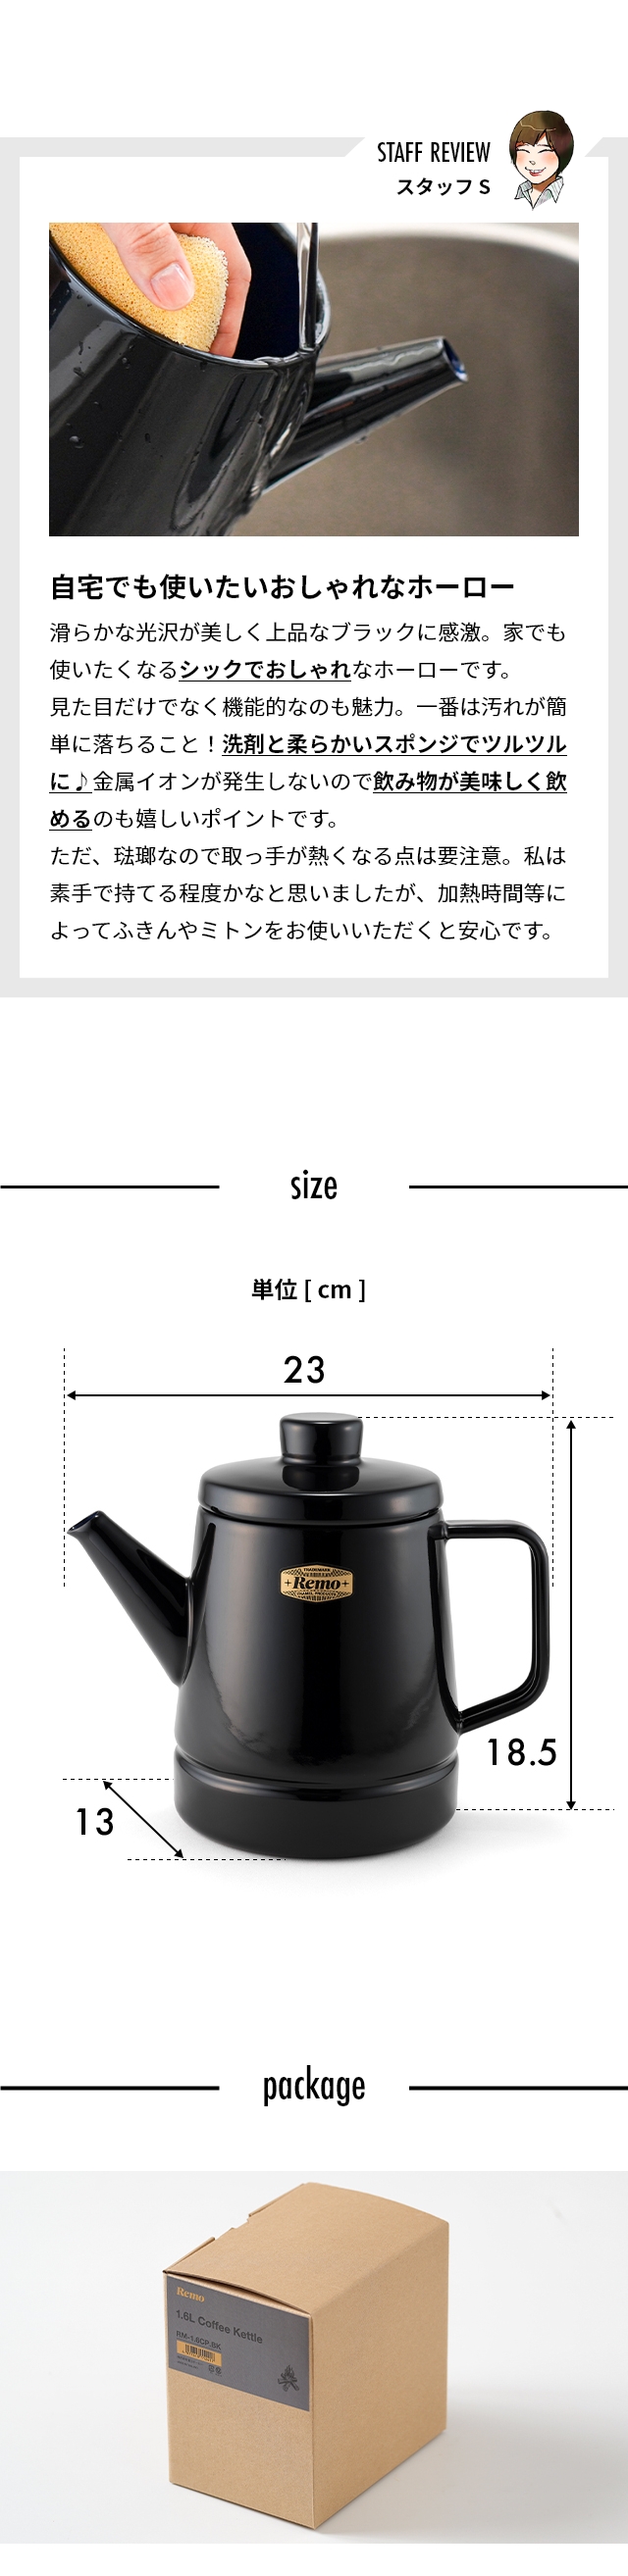 Remo (レモ) 1.6L コーヒーケトル